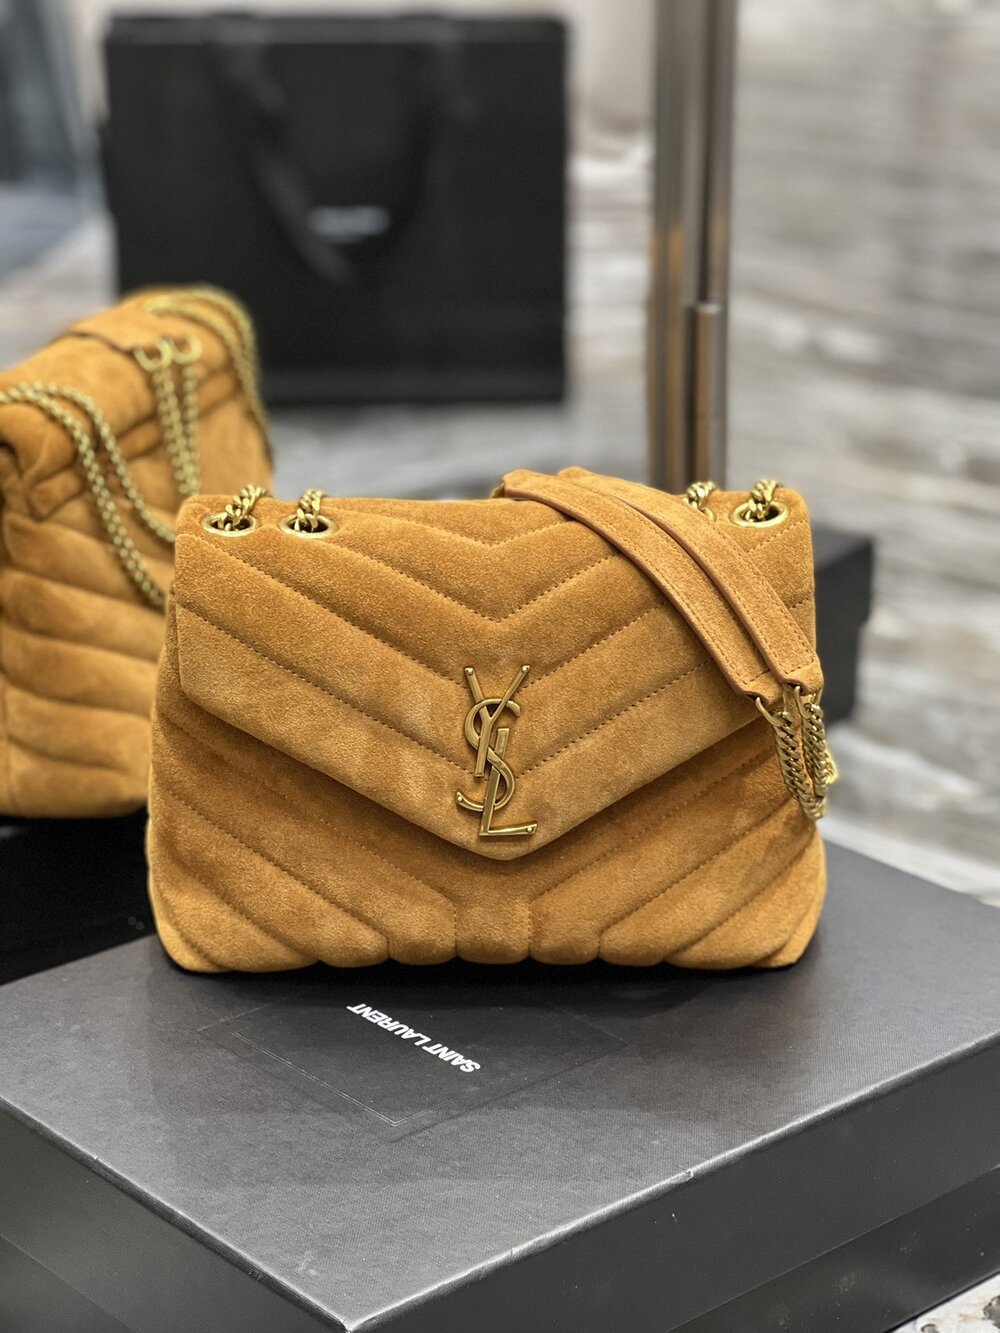 A bag LOULOU CHAIN BAG 25 cm